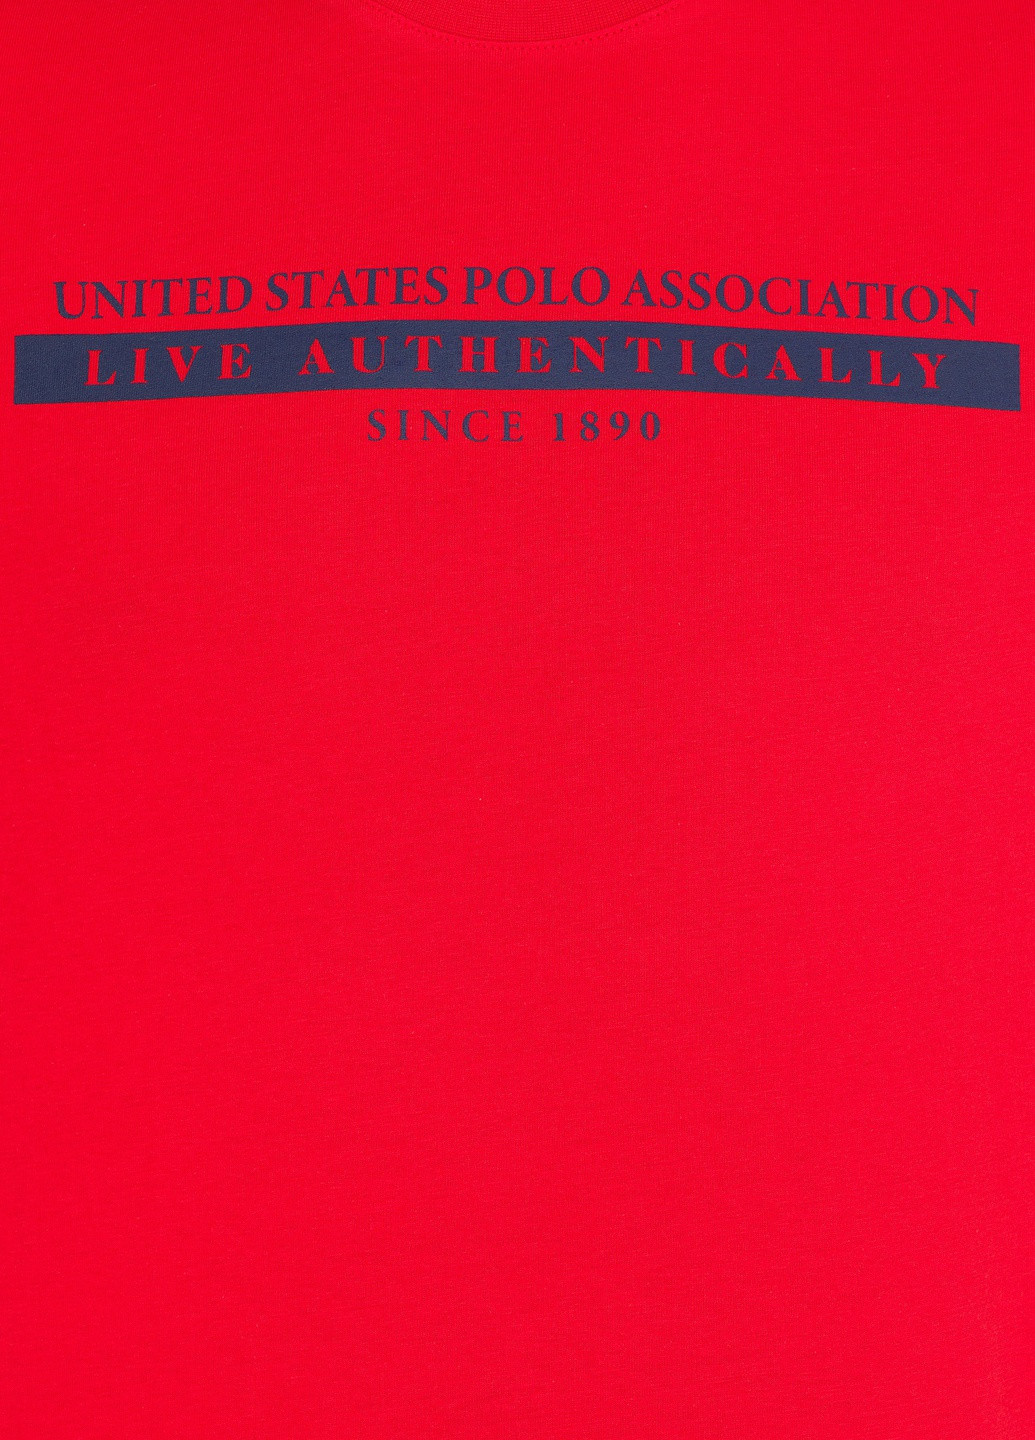 Червона футболка U.S. Polo Assn.